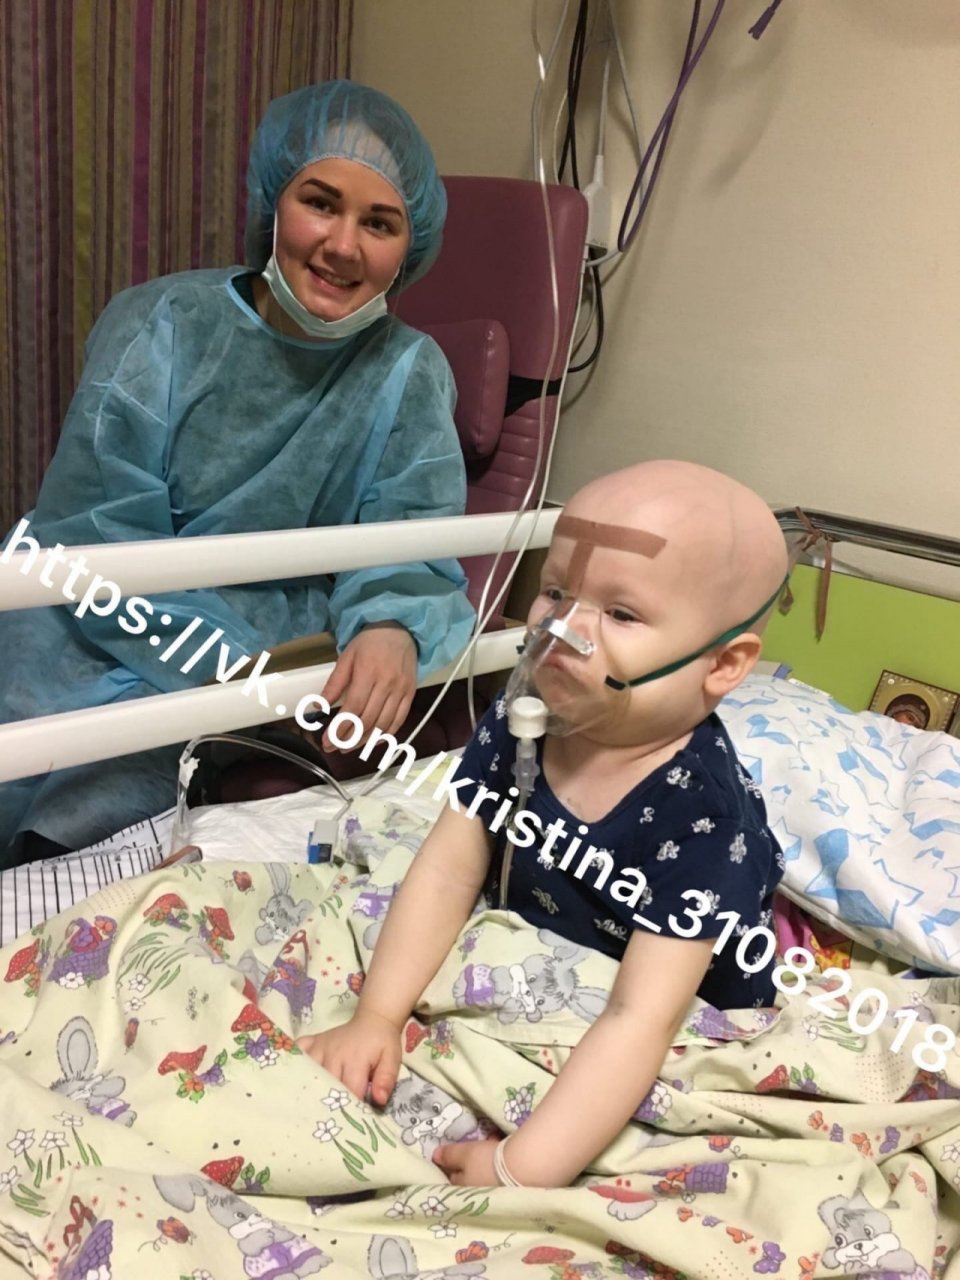 "Ночь прошла ужасно тяжело": малышке с 4 стадией рака осталось собрать 4,7 миллиона рублей